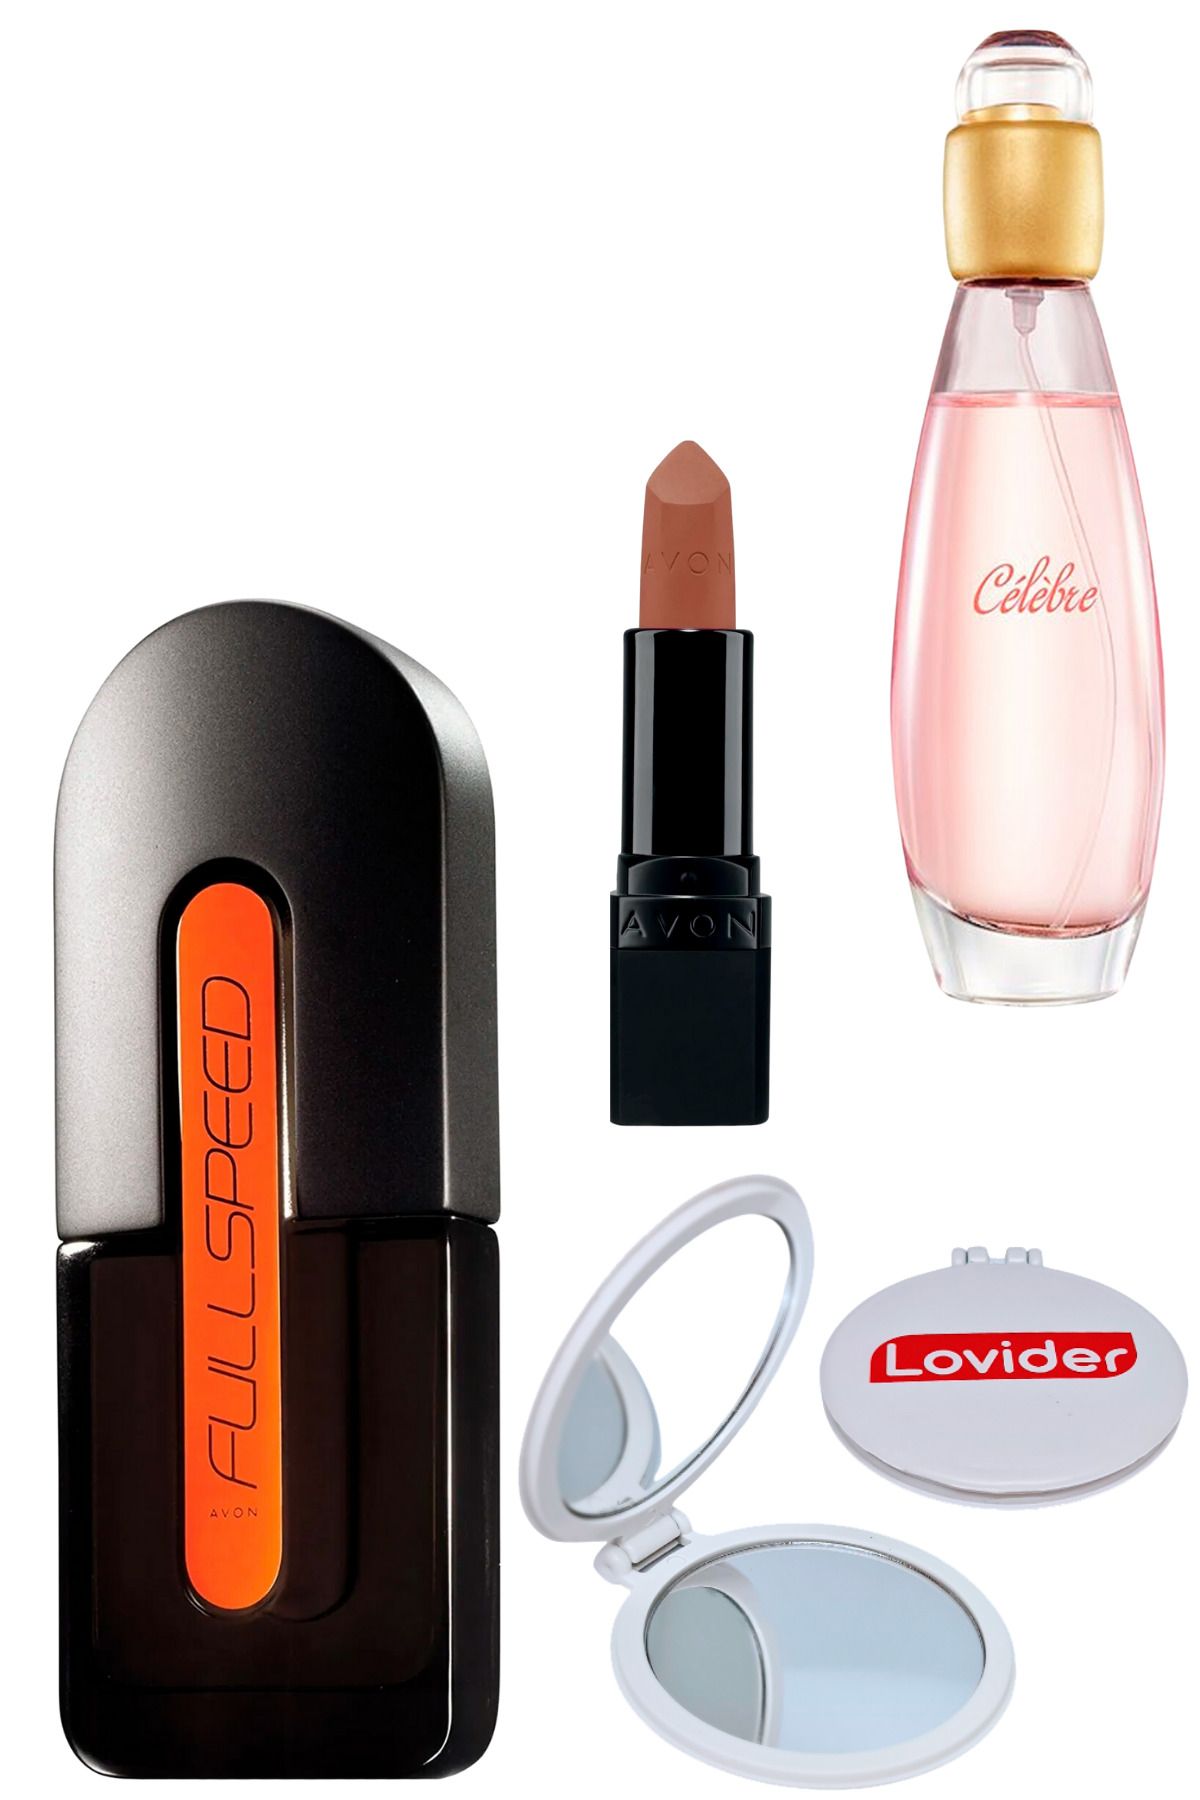 Avon Full Speed Erkek + Celebre Kadın Parfüm + Mat Ruj Marvellous Mocha + Lovider Cep Aynası